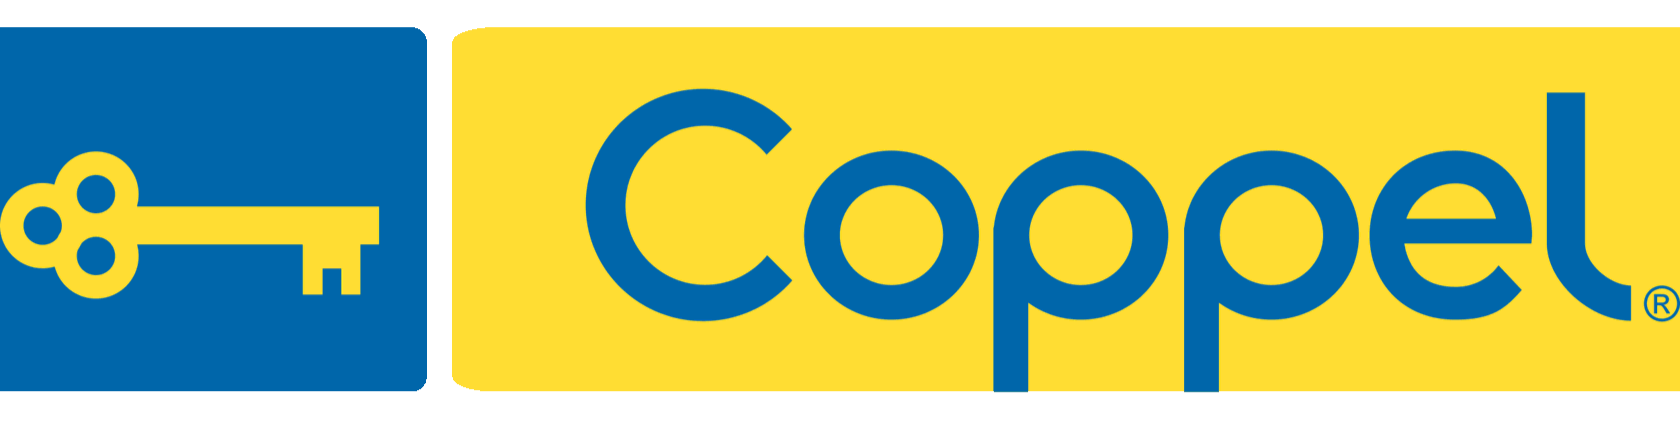 Logotipo Coppel